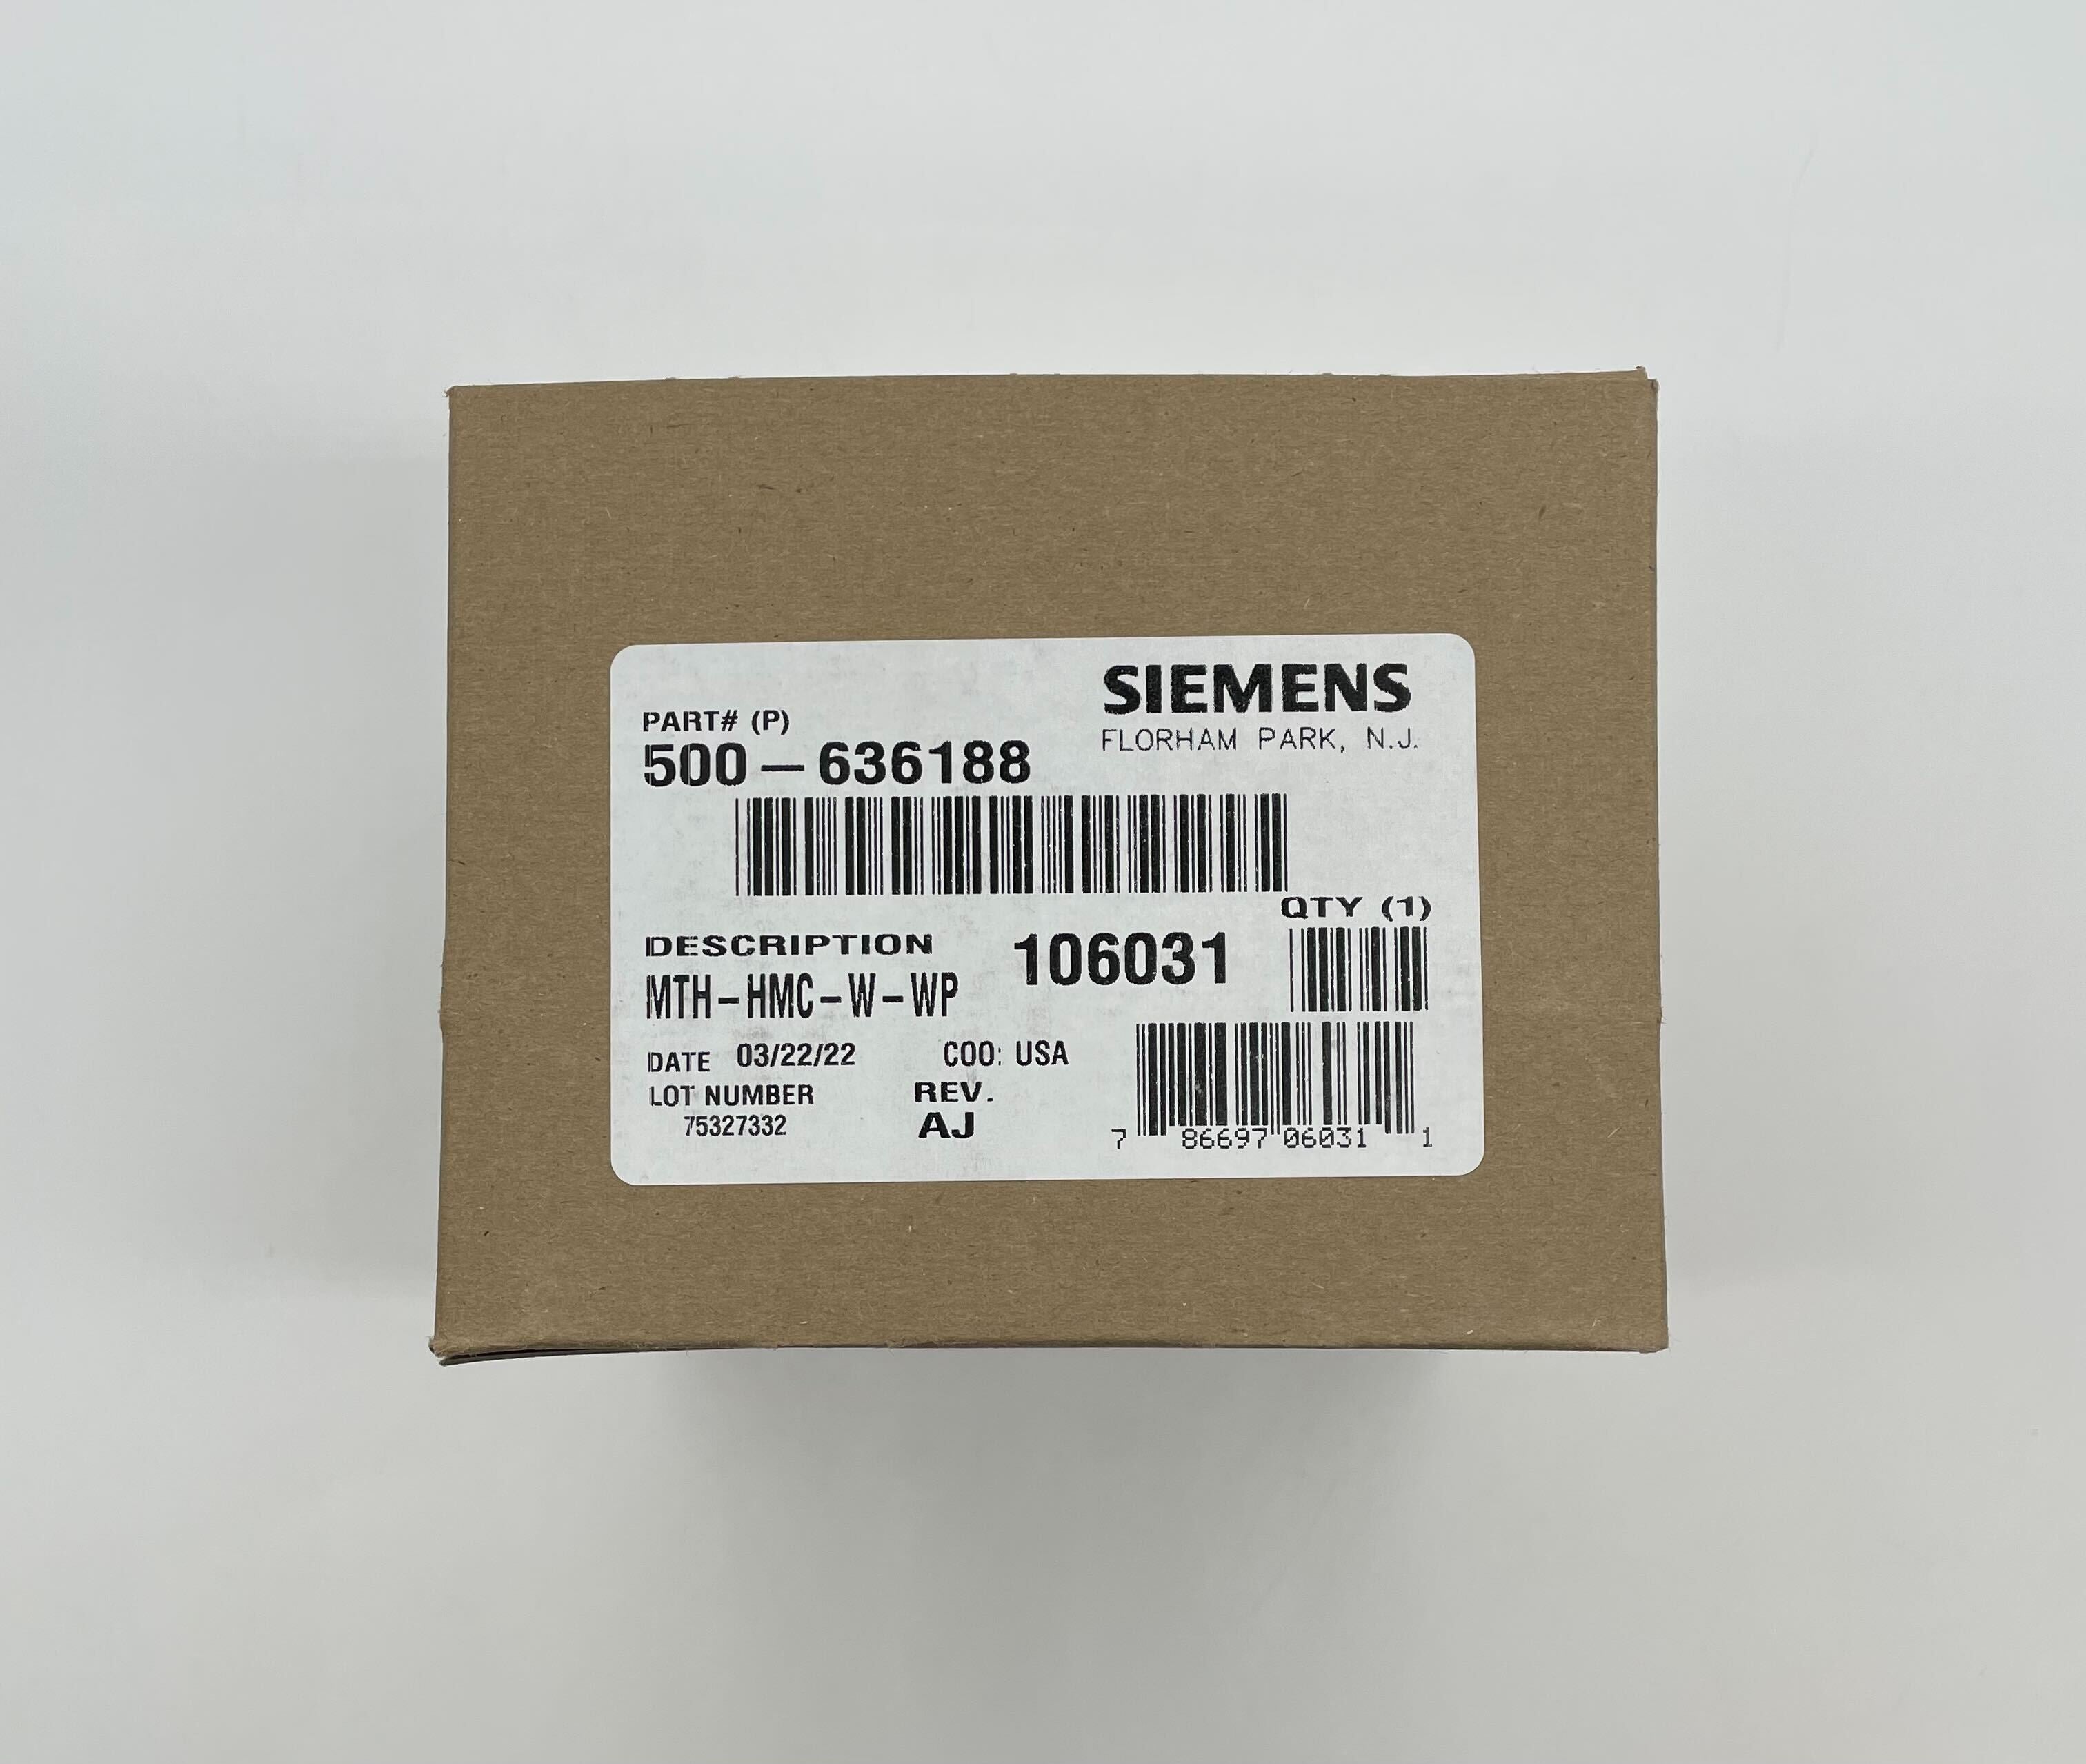 Siemens MTH-HMC-W-WP